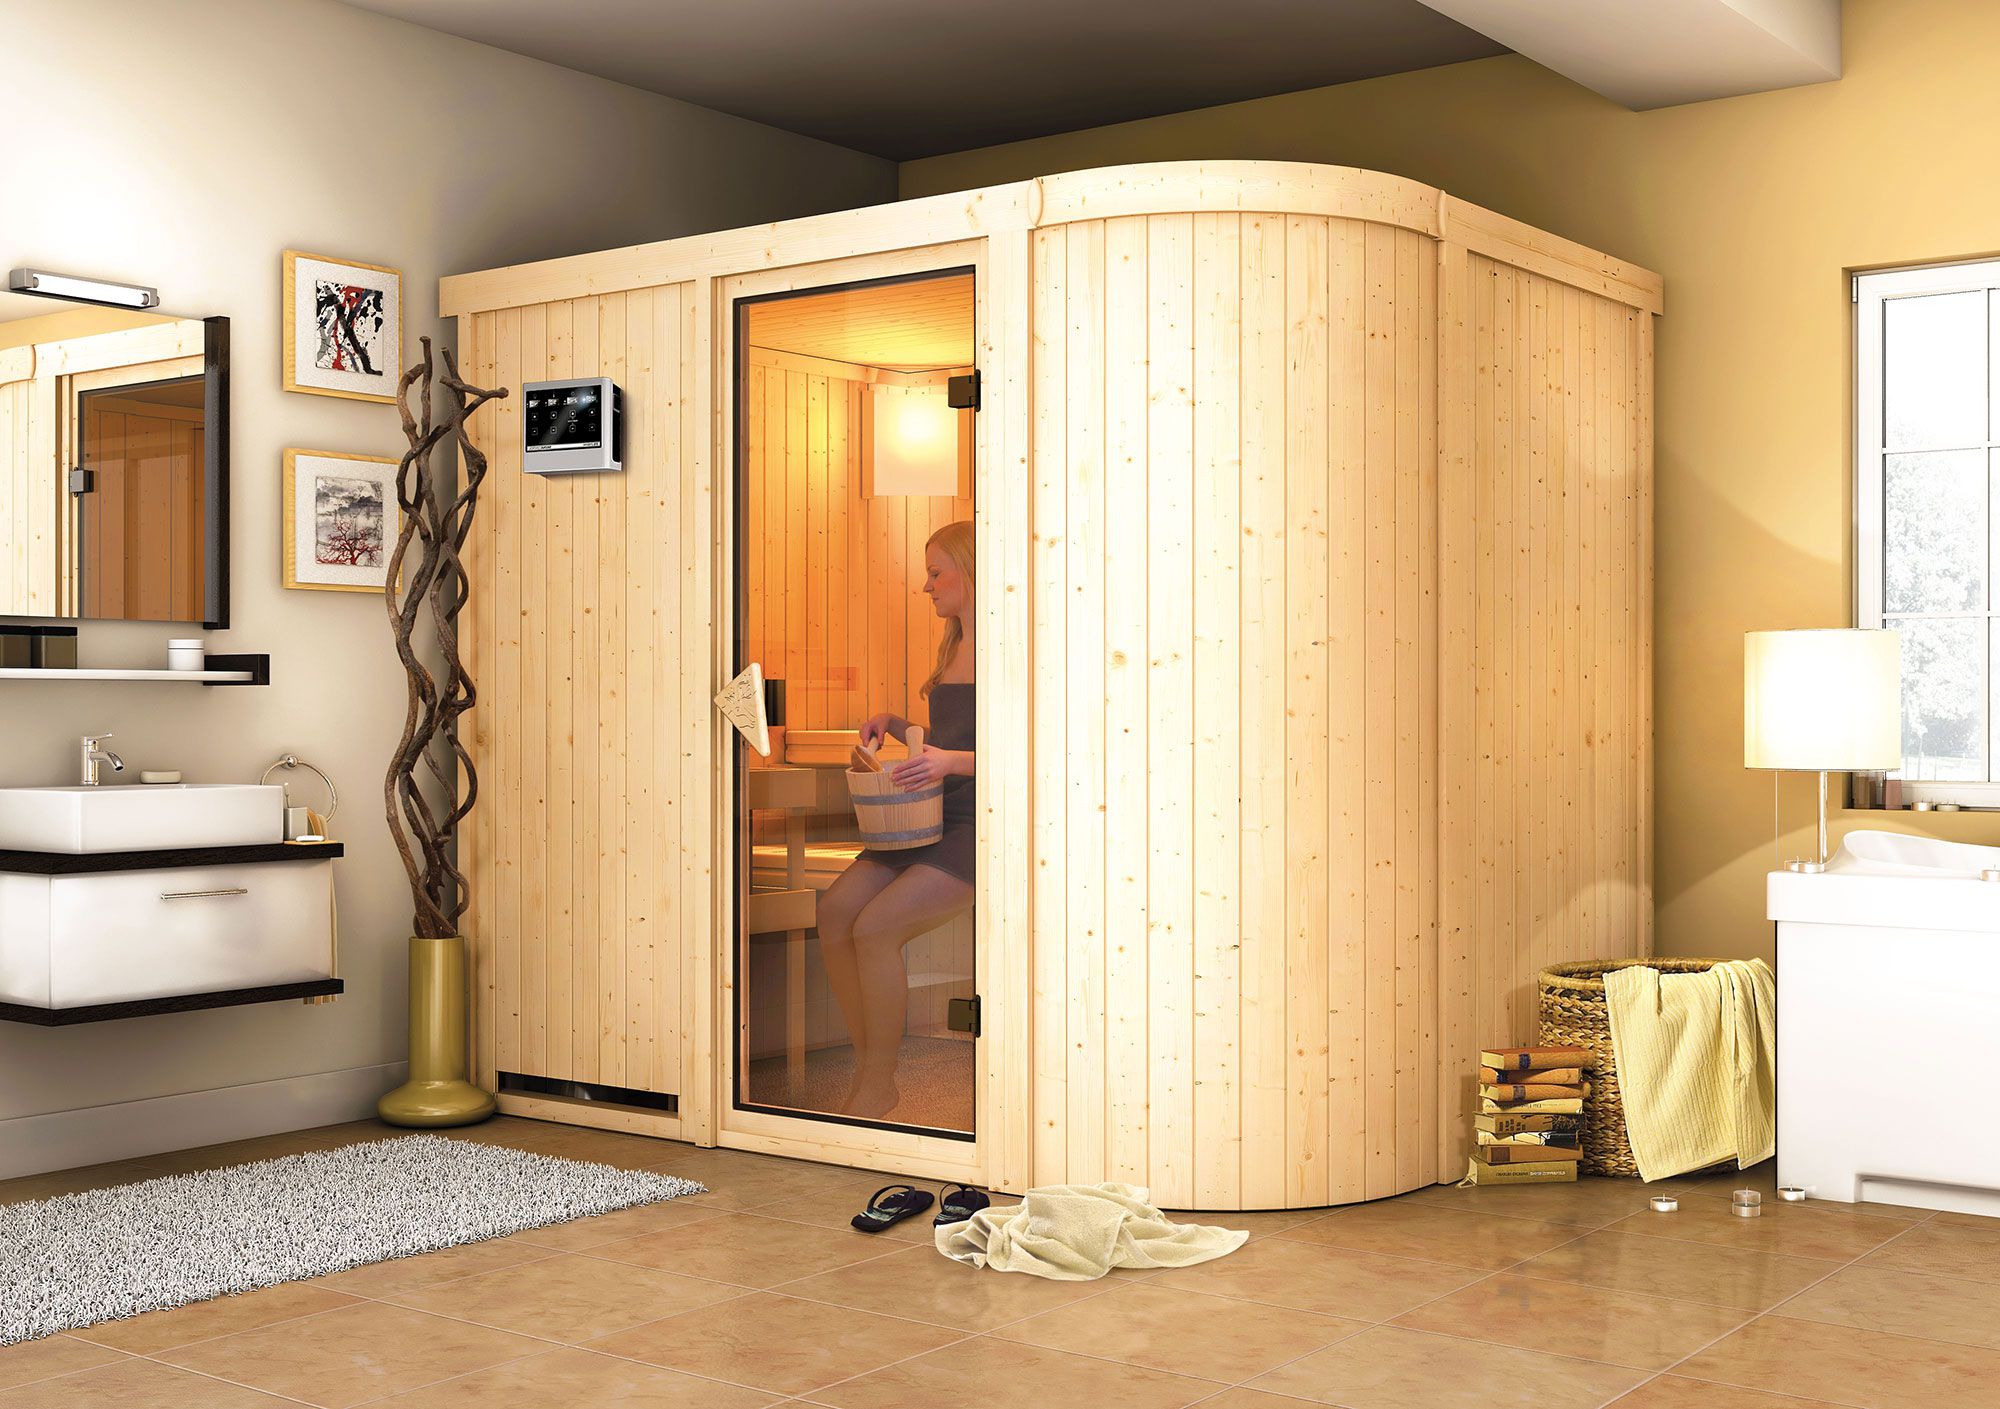 Sauna "Einar" SET mit bronzierter Tür & Ofen BIO 9 kW - 231 x 170 x 198 cm (B x T x H)